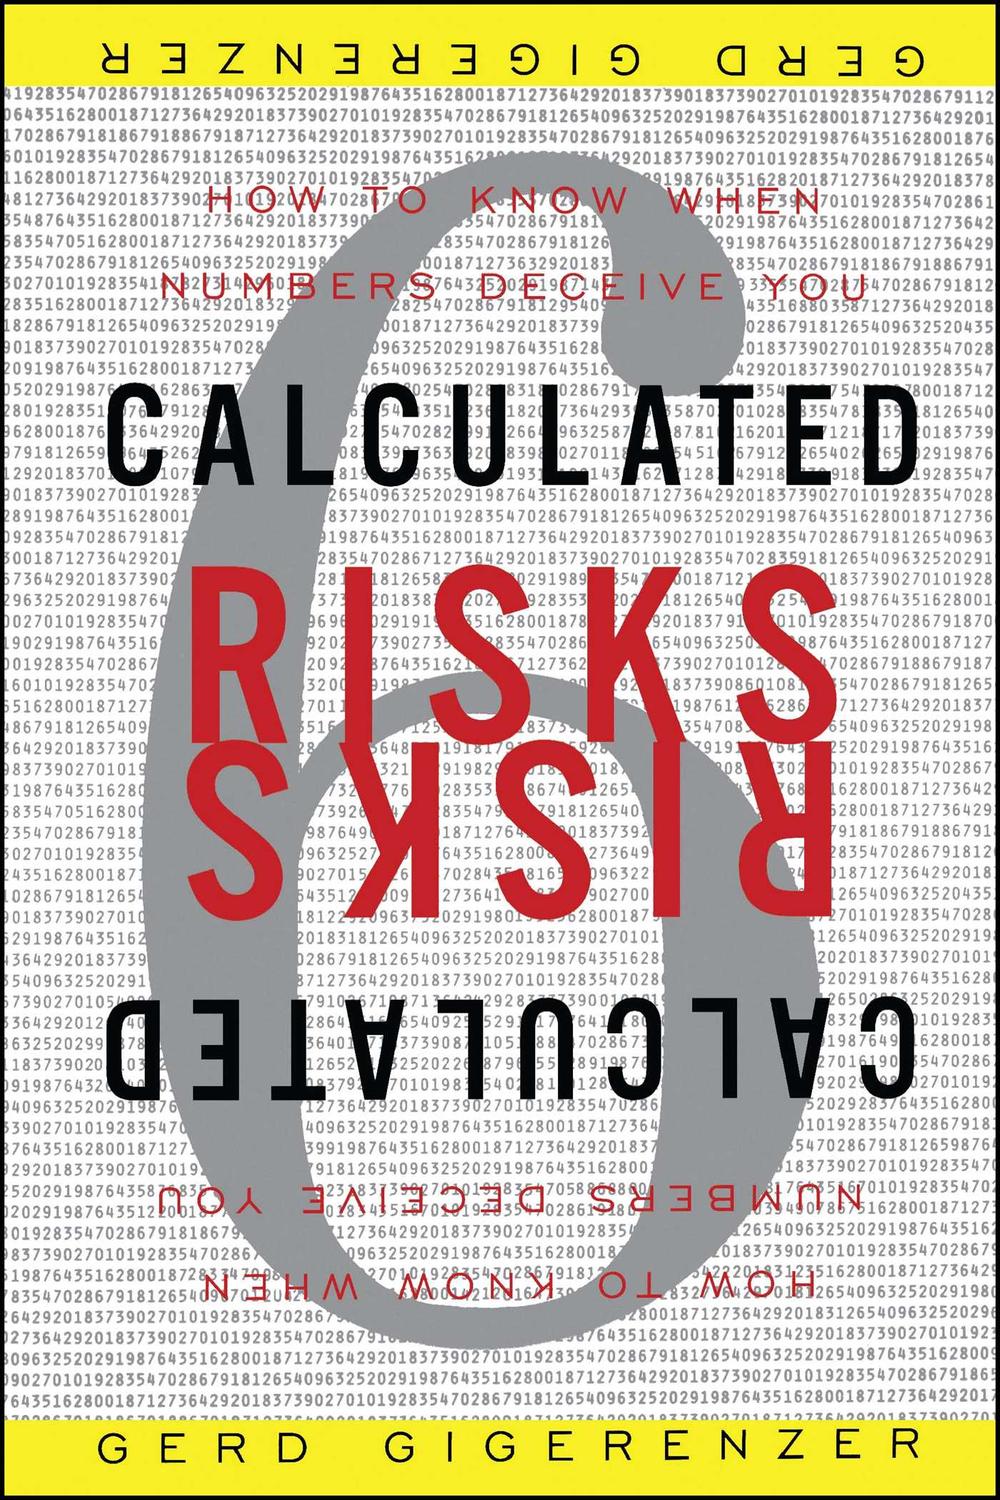 Calculated Risks - Gerd Gigerenzer,,